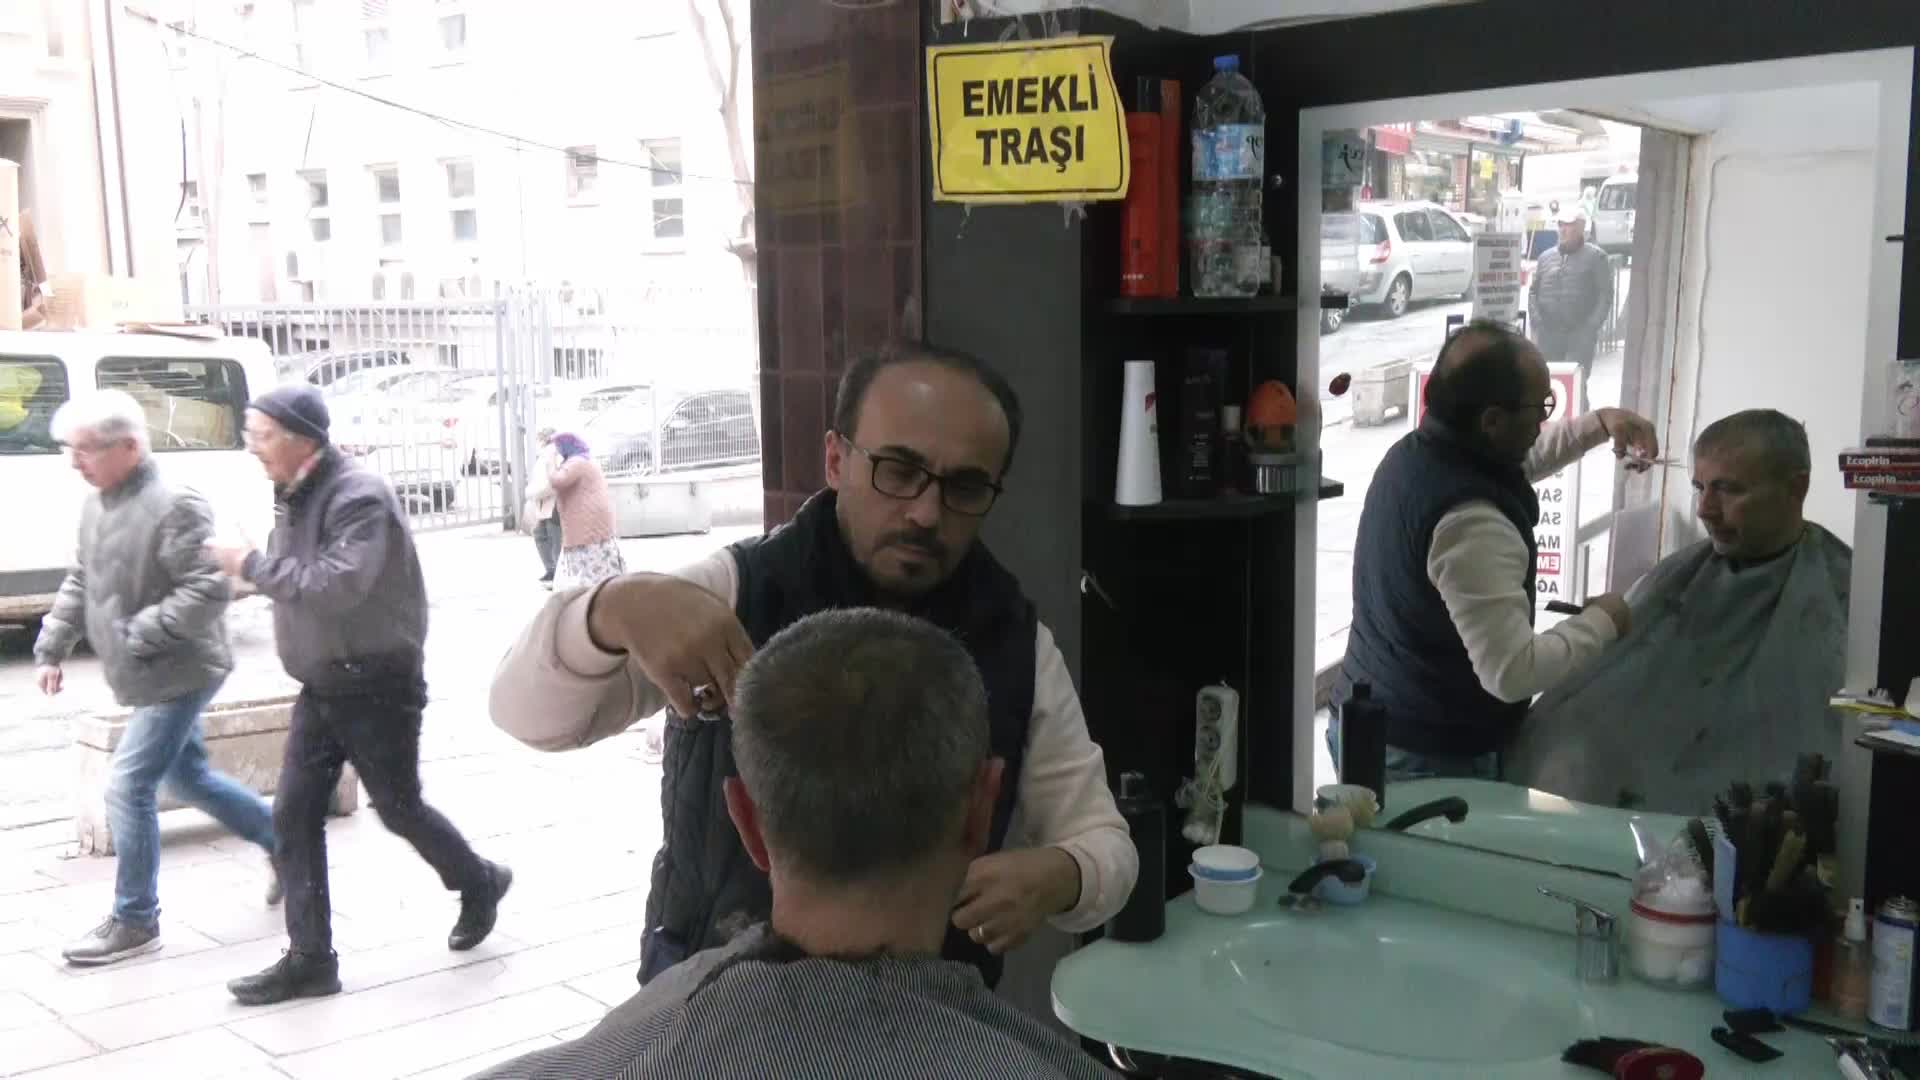 Ankara’da emeklilere tıraş indirimi